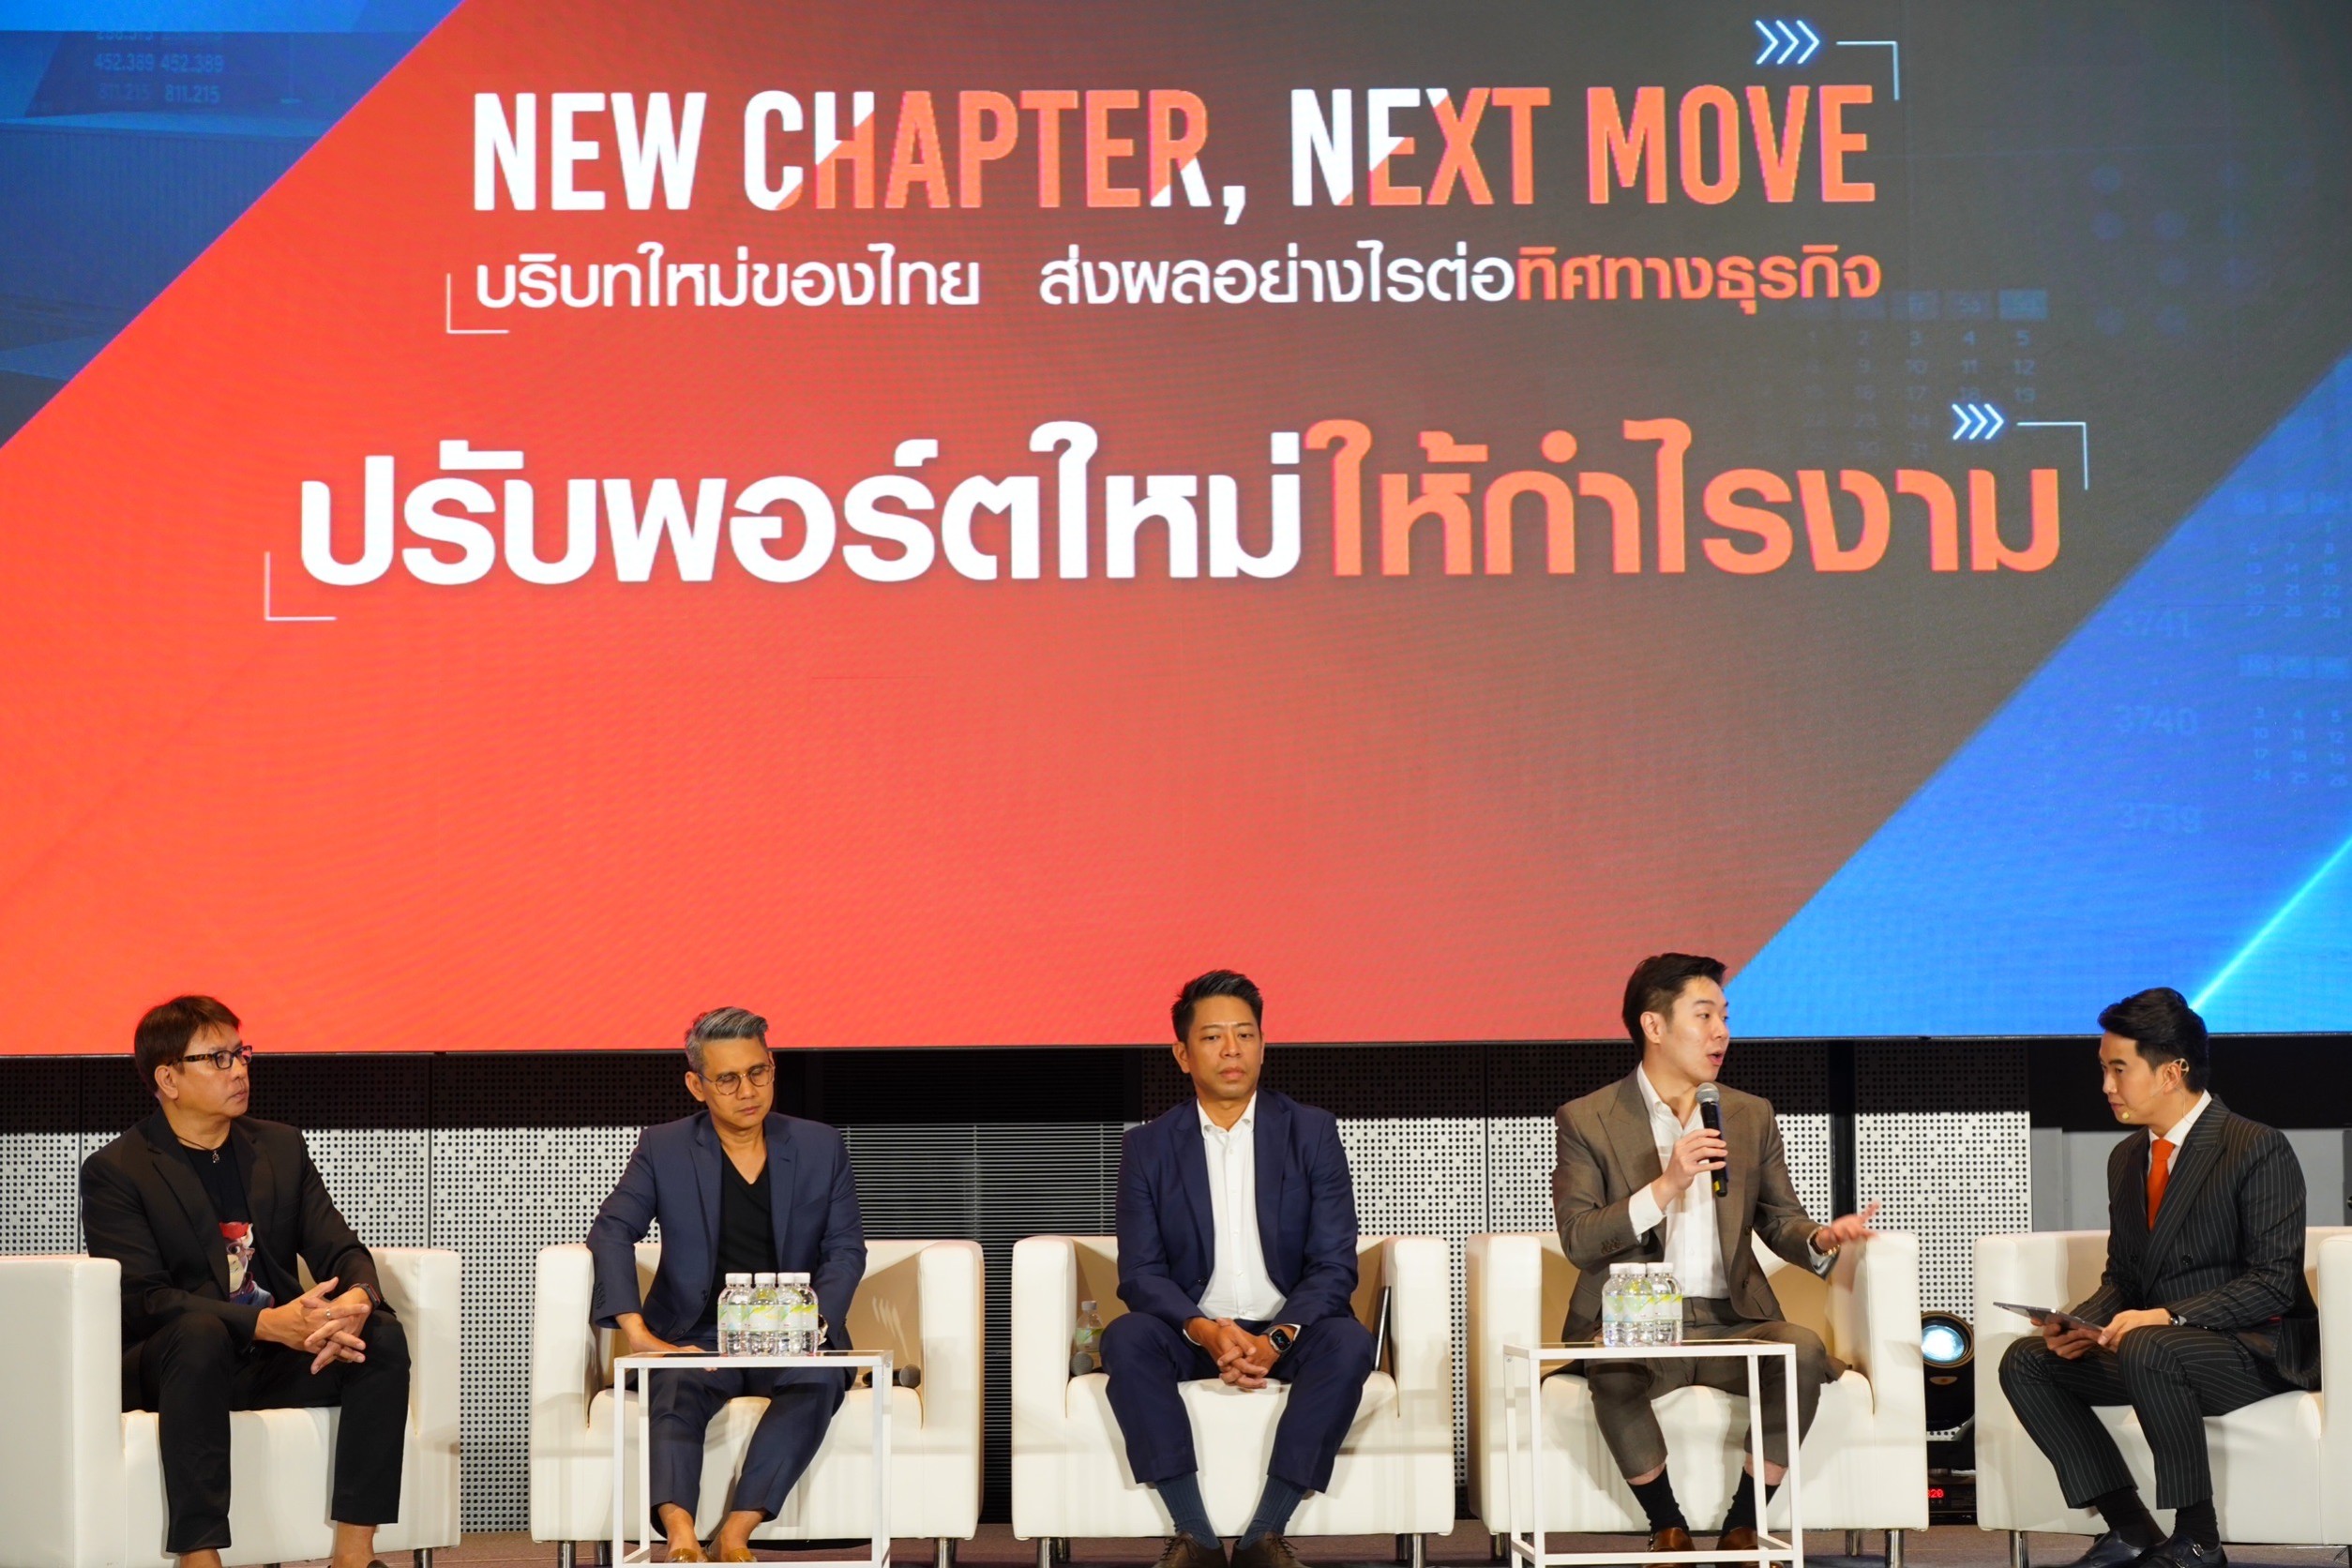 ประมวลภาพ ภาคบ่าย TNN จัดสัมมนา "บริบทใหม่ของไทย ส่งผลอย่างไรต่อทิศทางธุรกิจ"